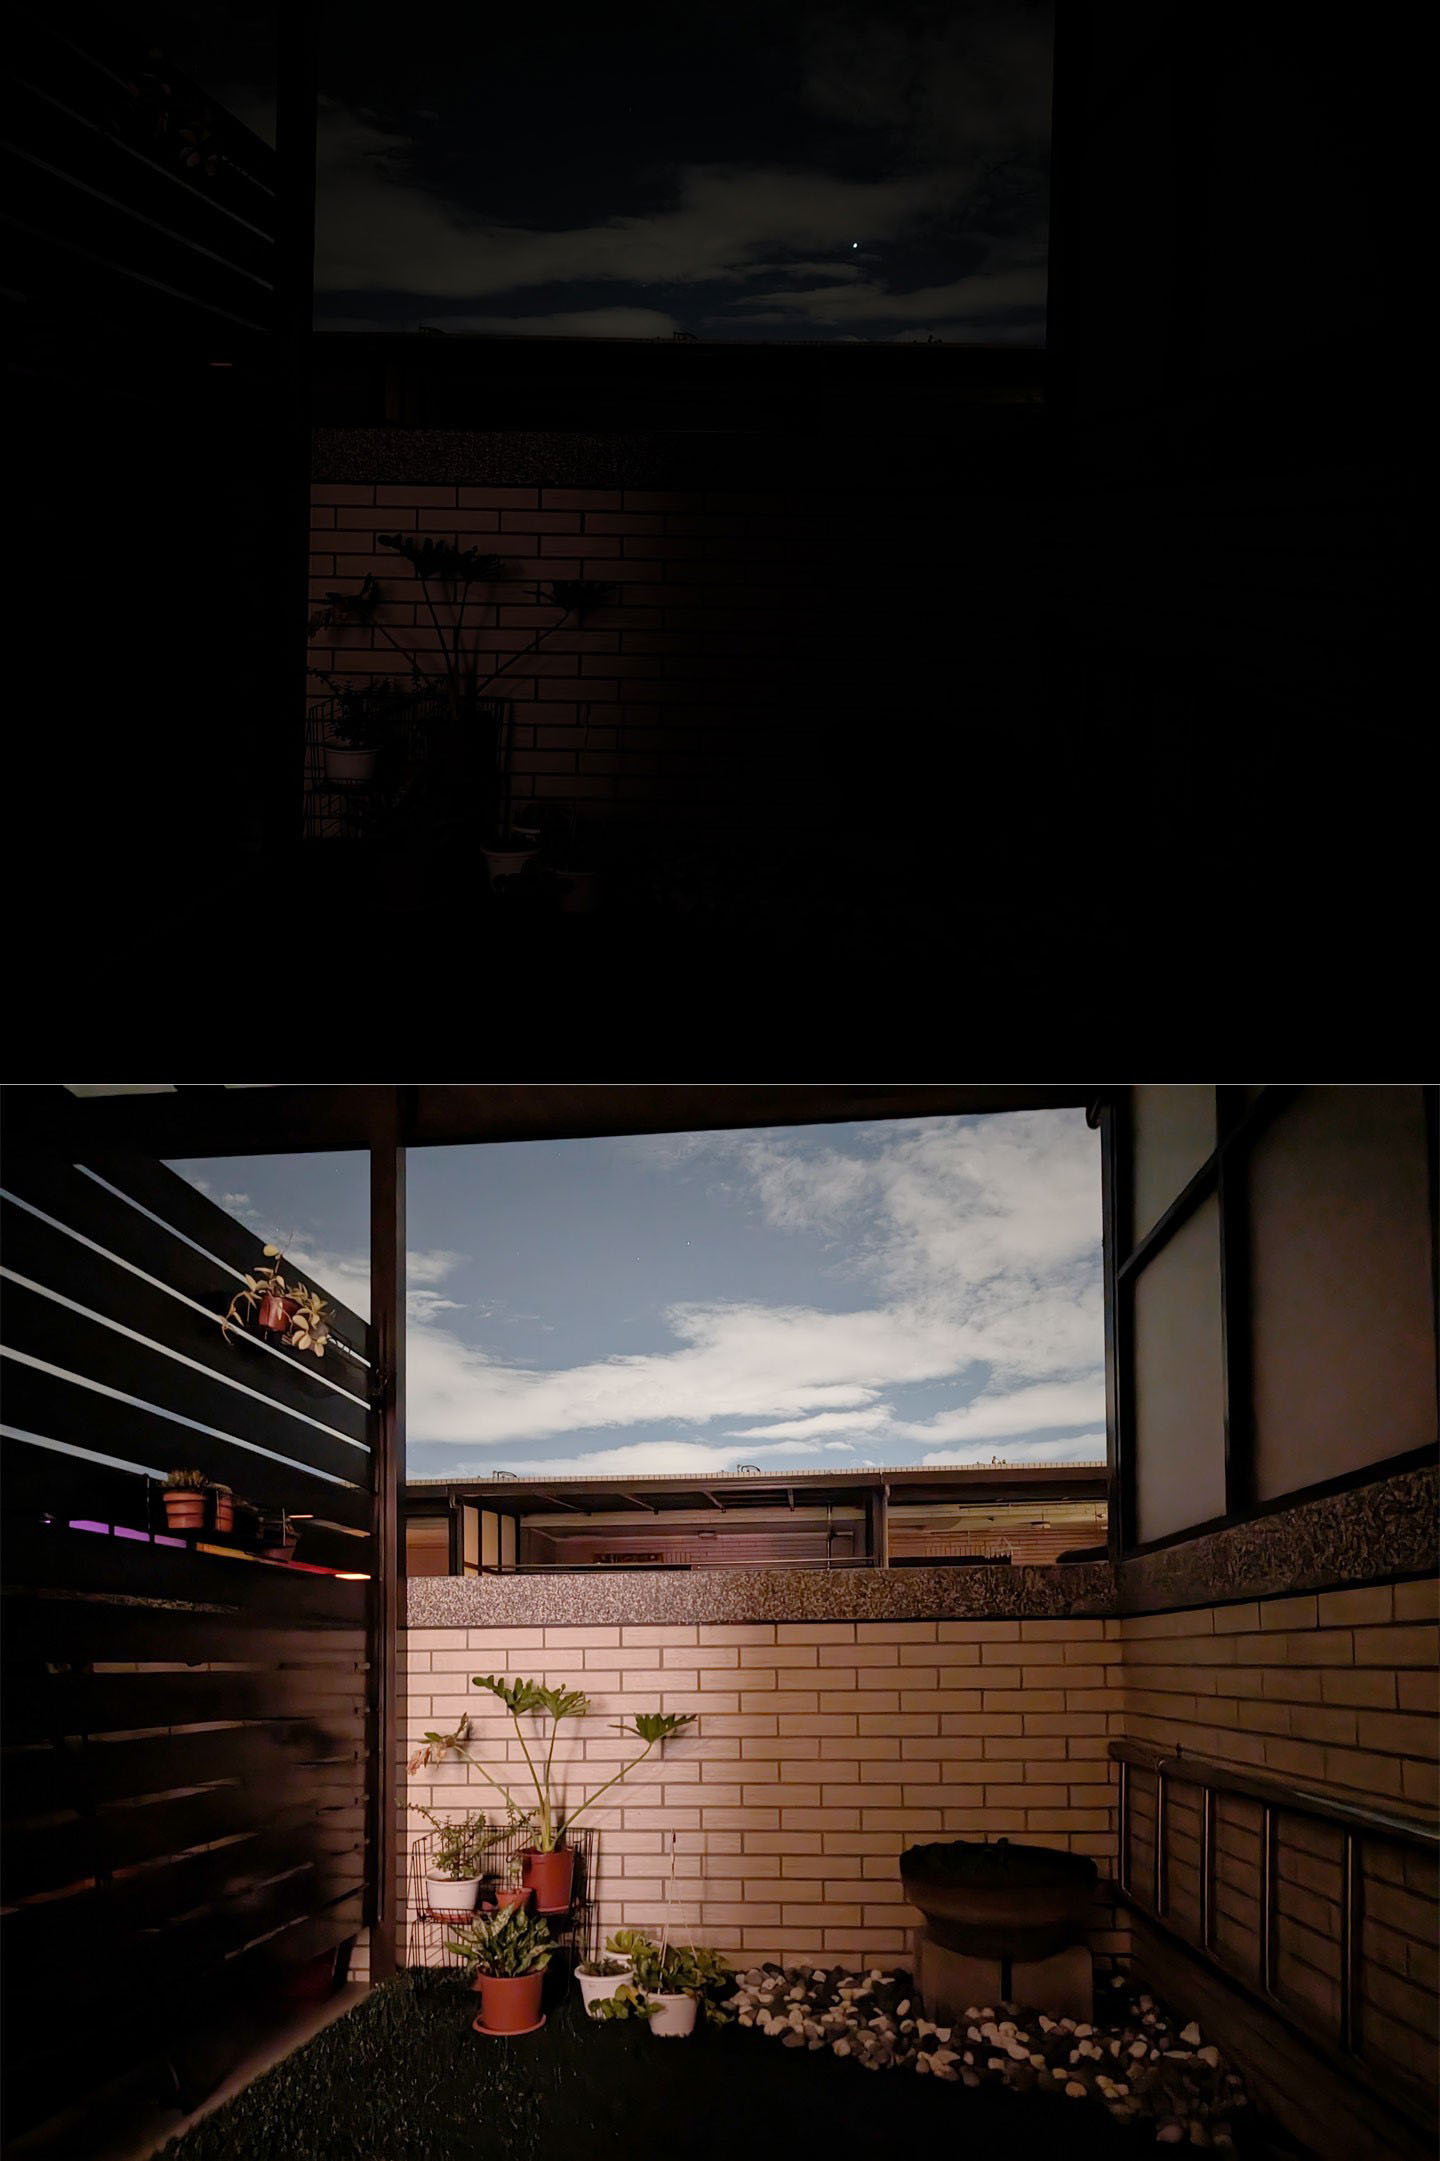 另一個完全無光的陽台場景，從關閉夜視（上）與開啟夜視（下）的拍攝效果也能發現極大的差異，就好像場景有額外打光一樣。